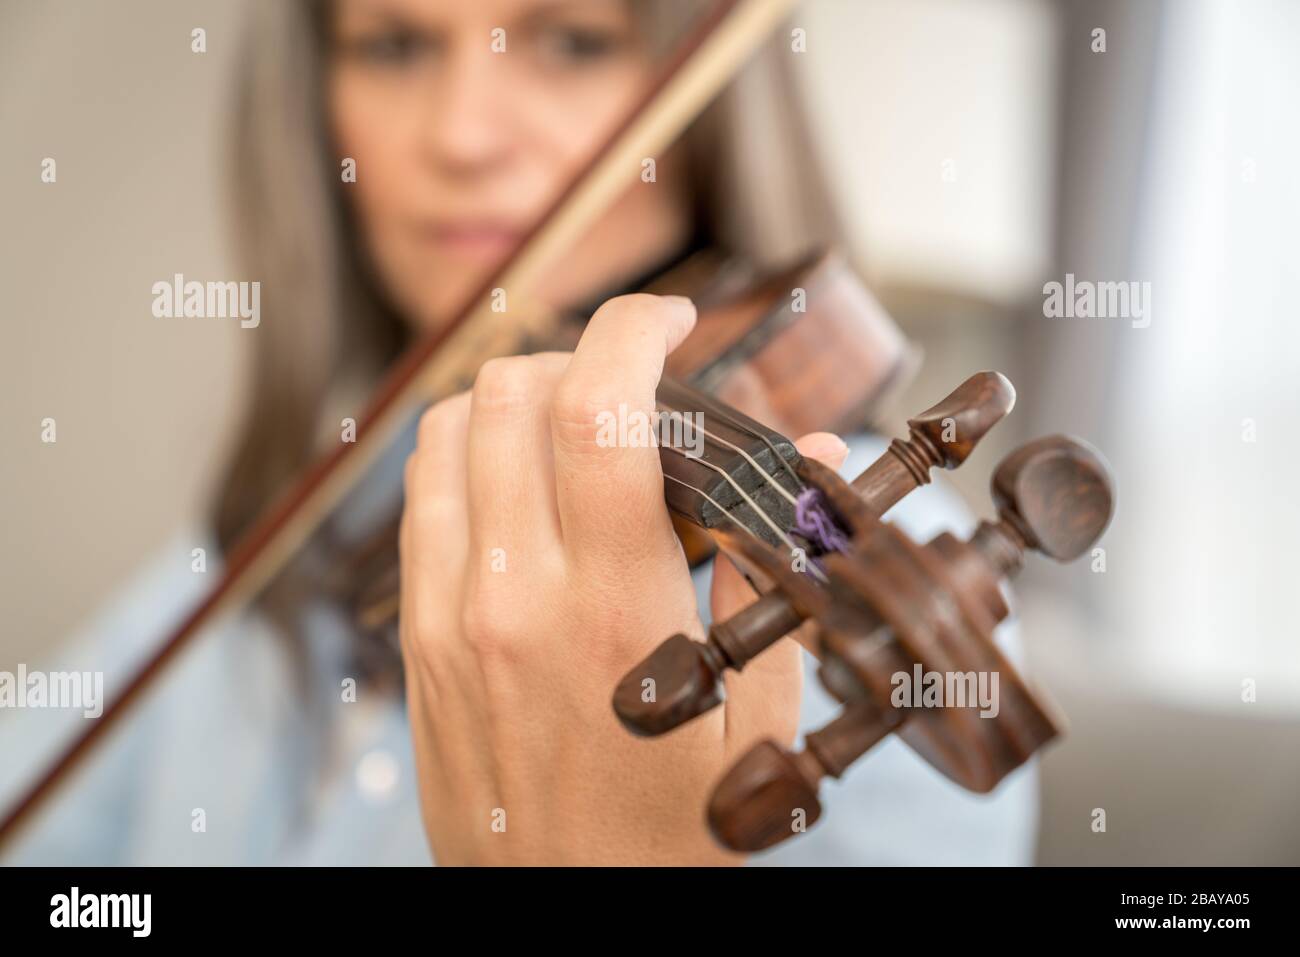 Immagine ravvicinata di una donna che suona il violino. Profondità di campo bassa, messa a fuoco sulle dita Foto Stock